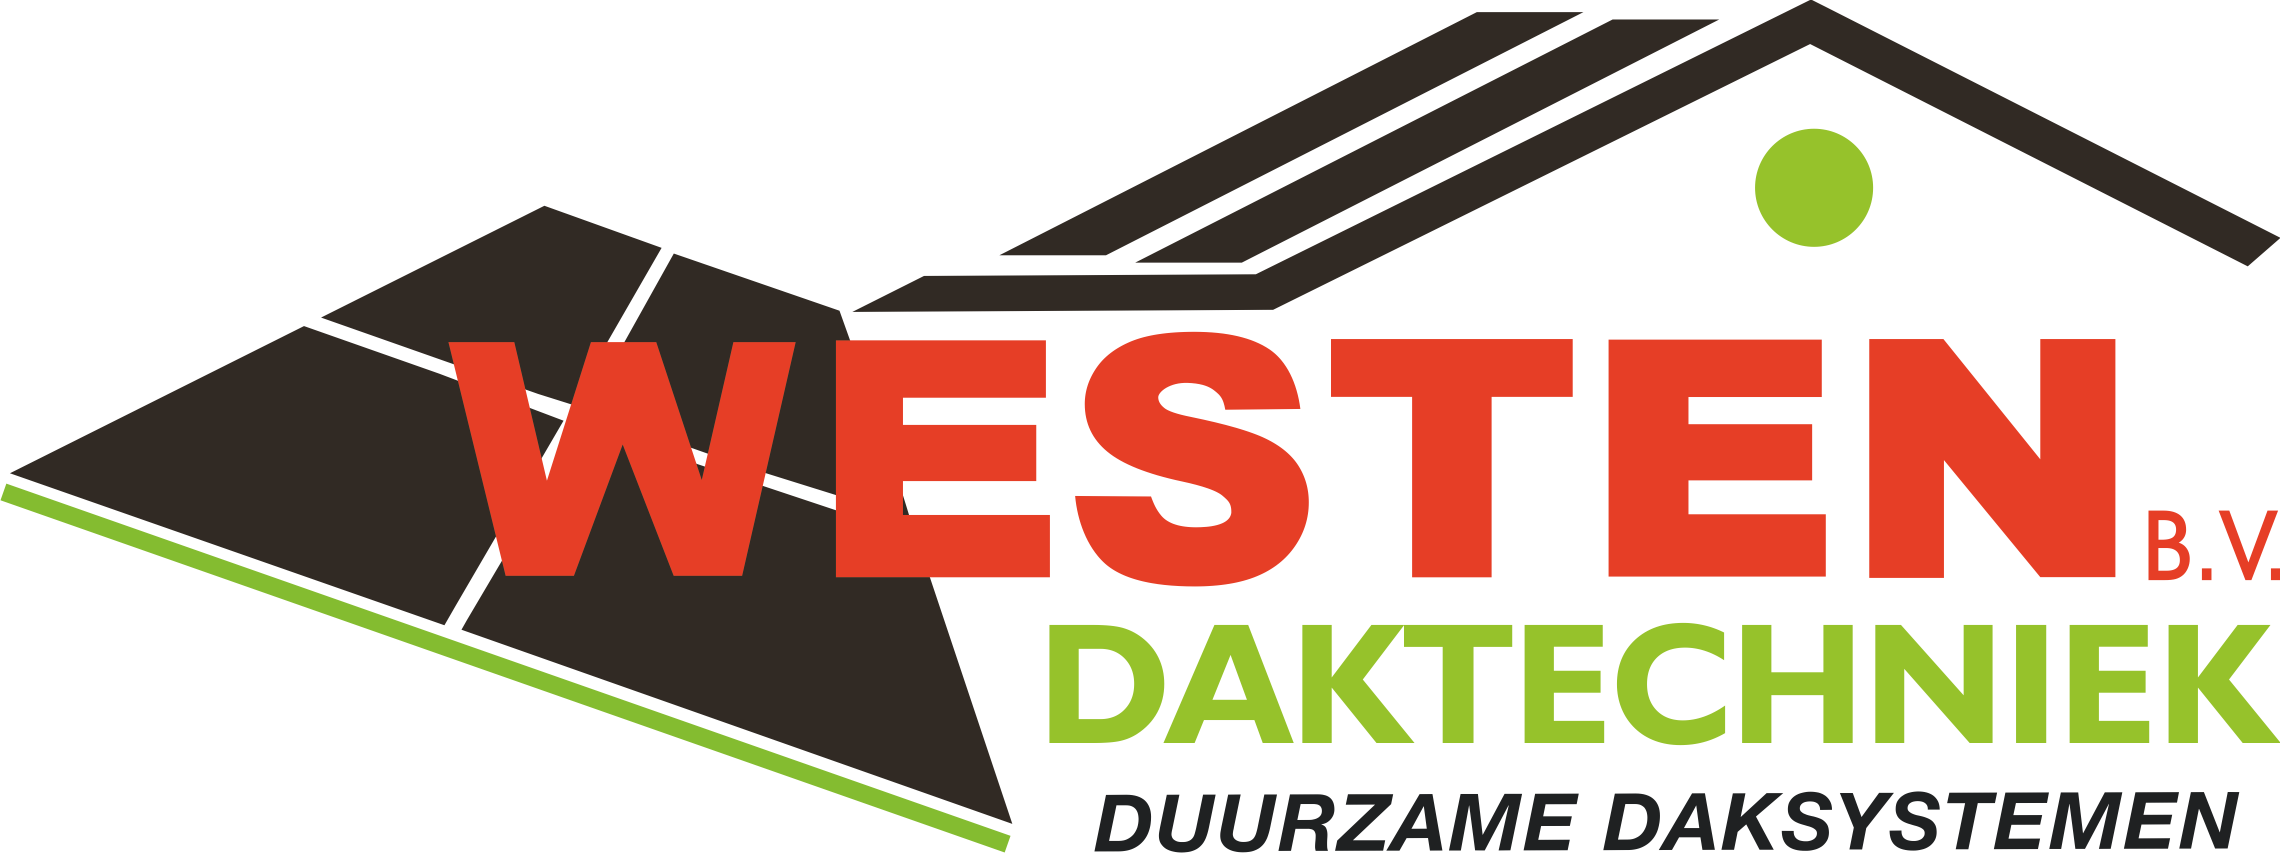 Westen Daktechniek